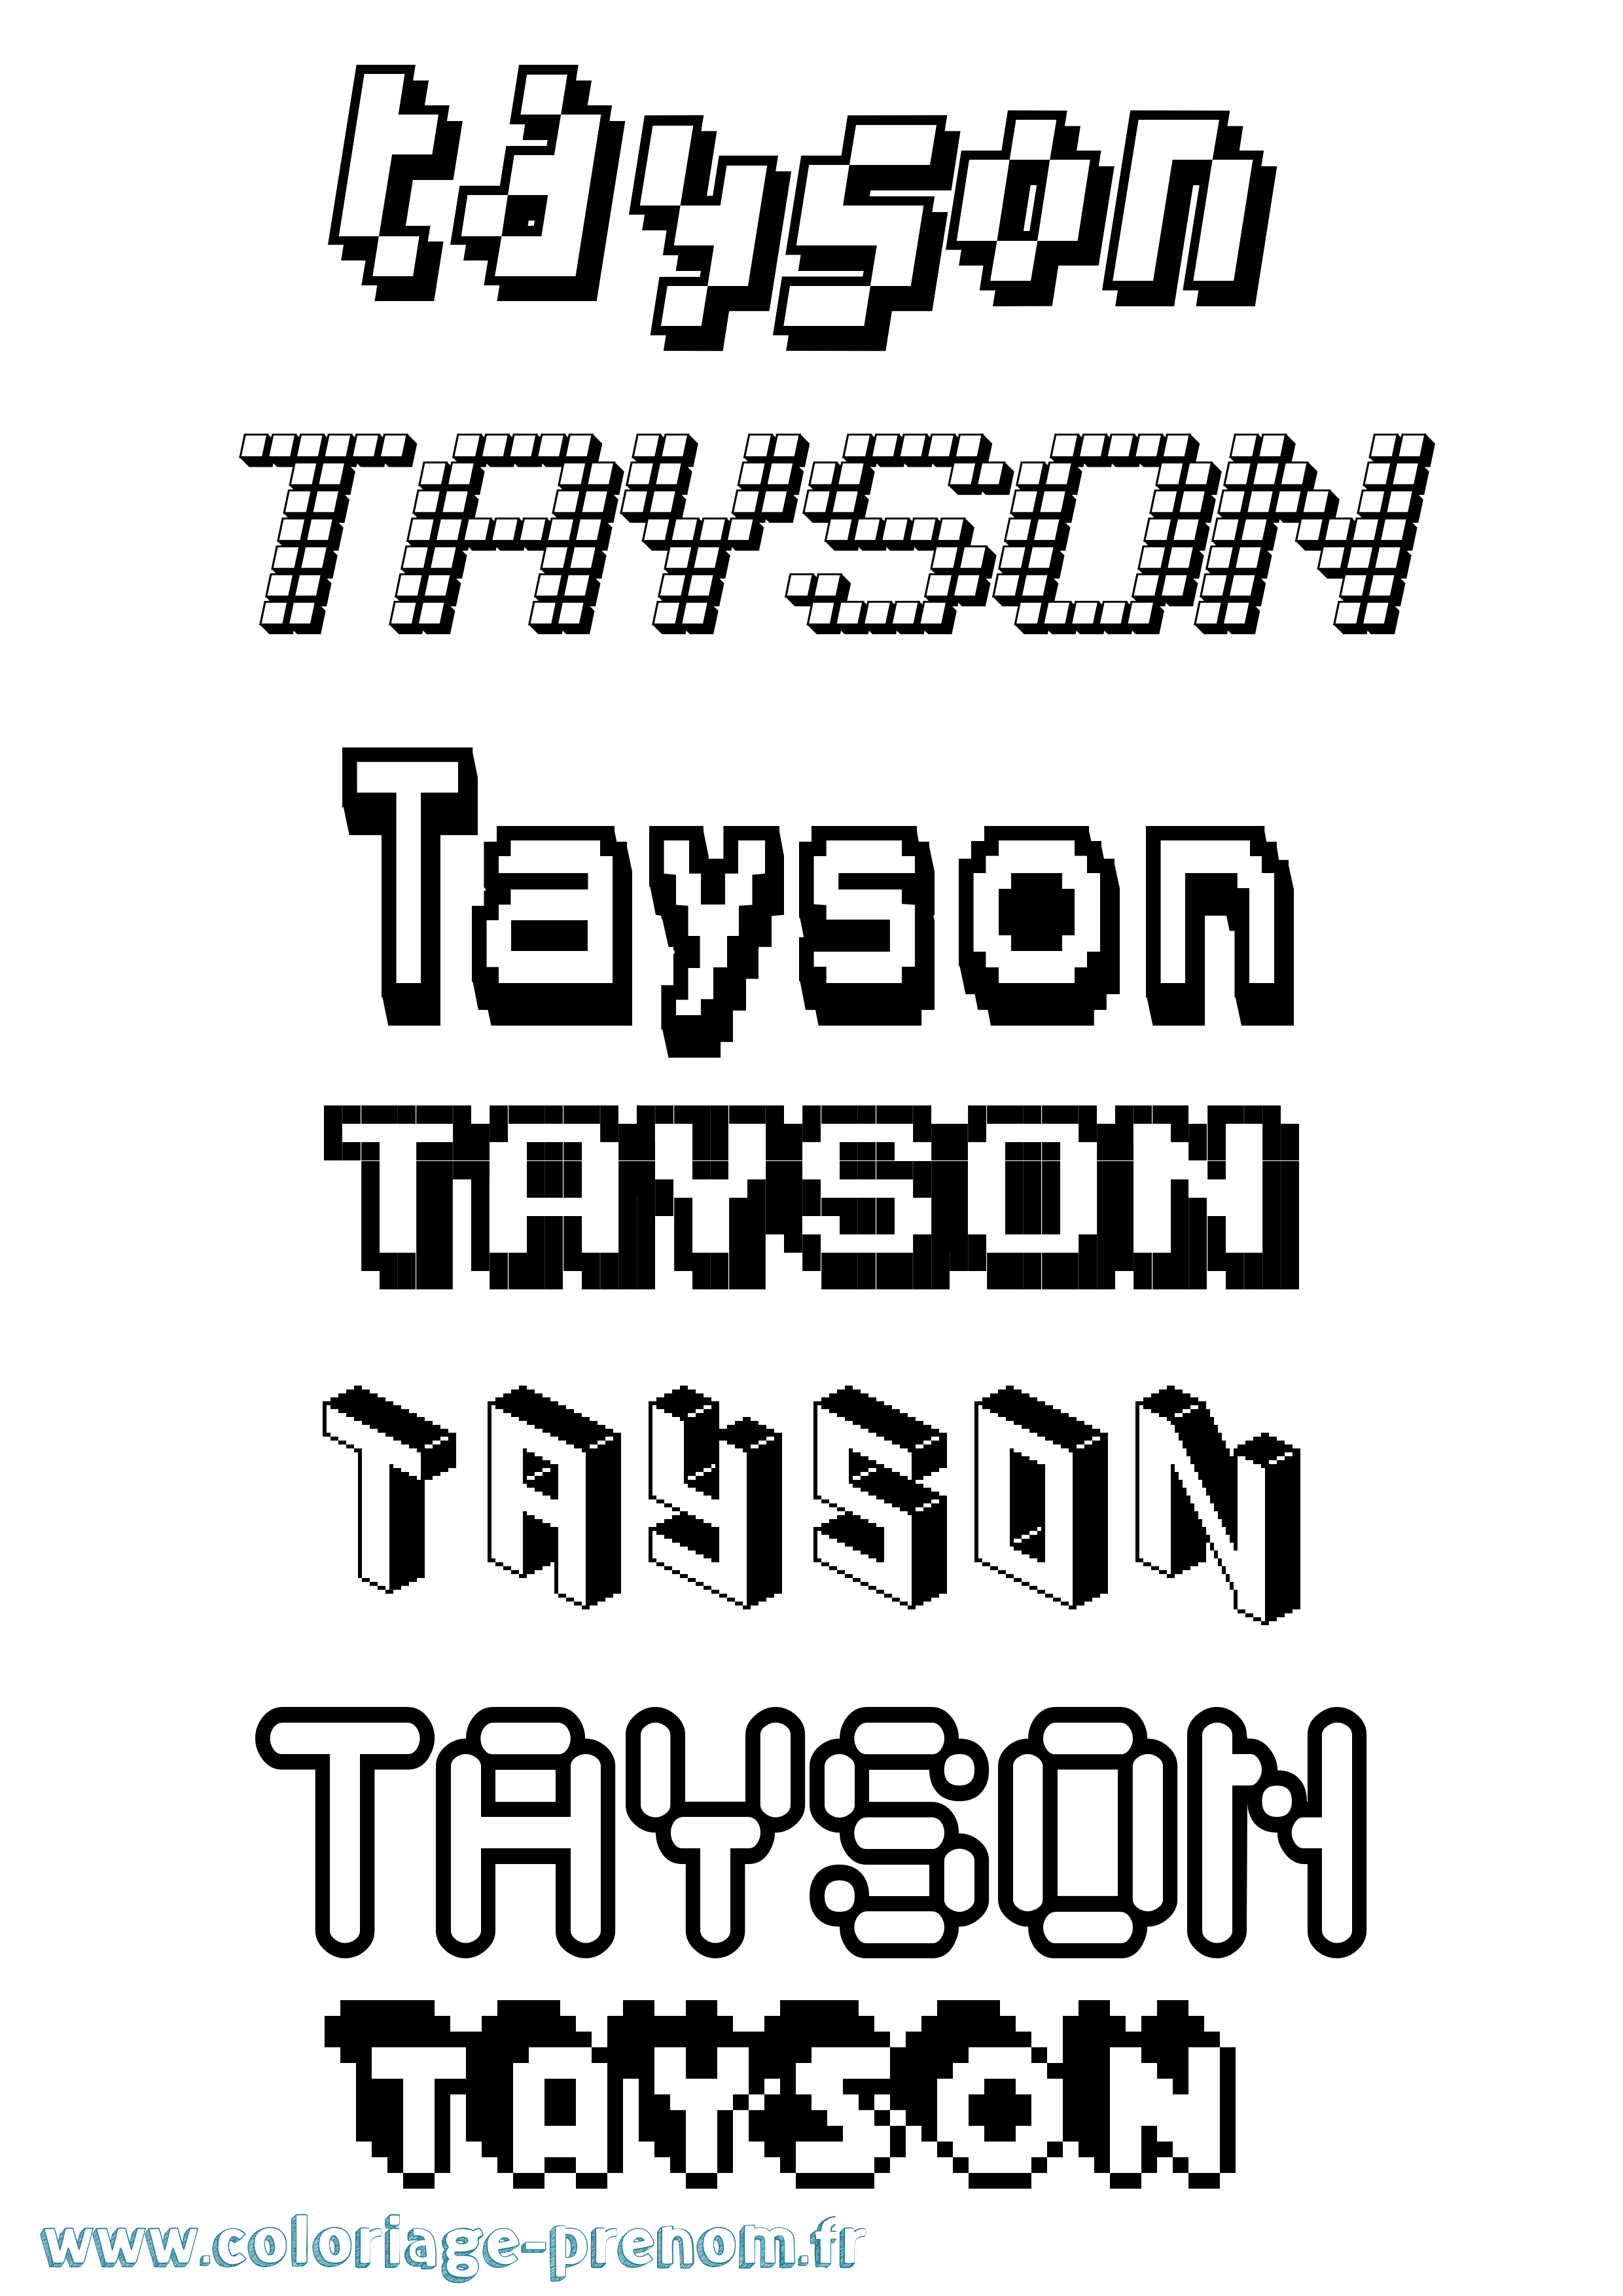 Coloriage prénom Tayson Pixel